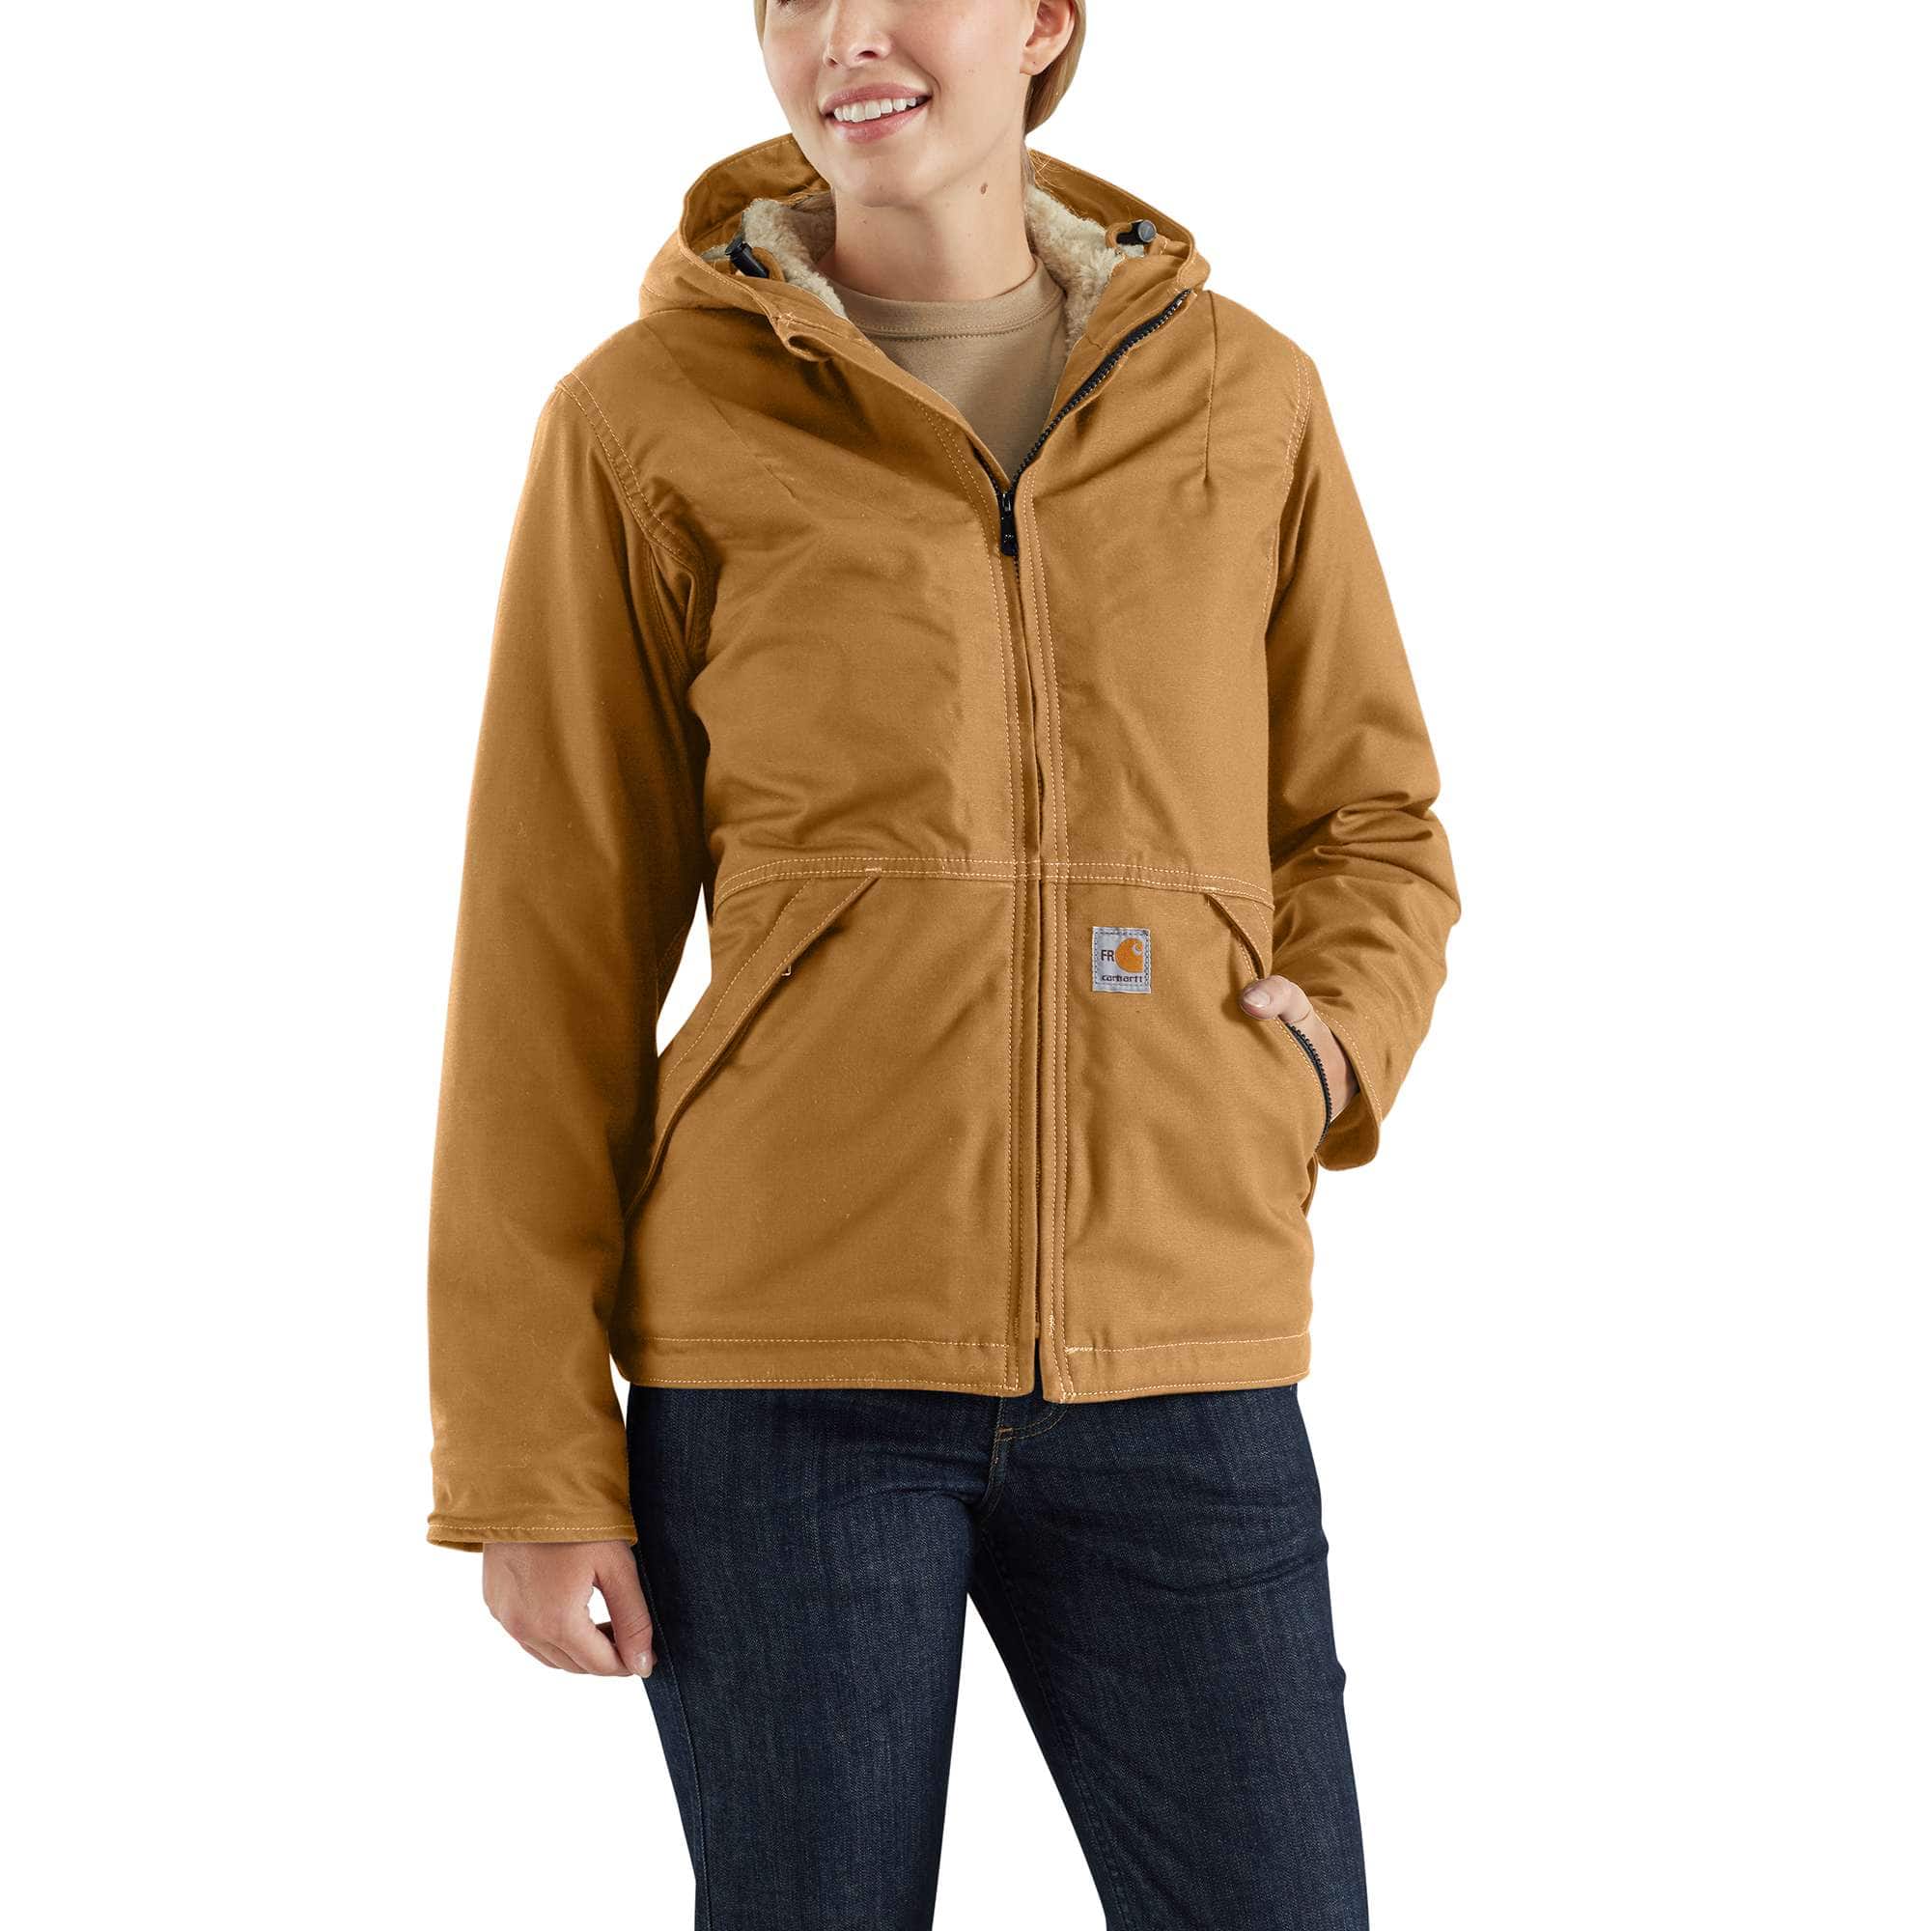 leg uit Het is goedkoop Een goede vriend Flame-Resistant Full Swing® Quick Duck® Sherpa-Lined Jacket | Carhartt  Company Gear